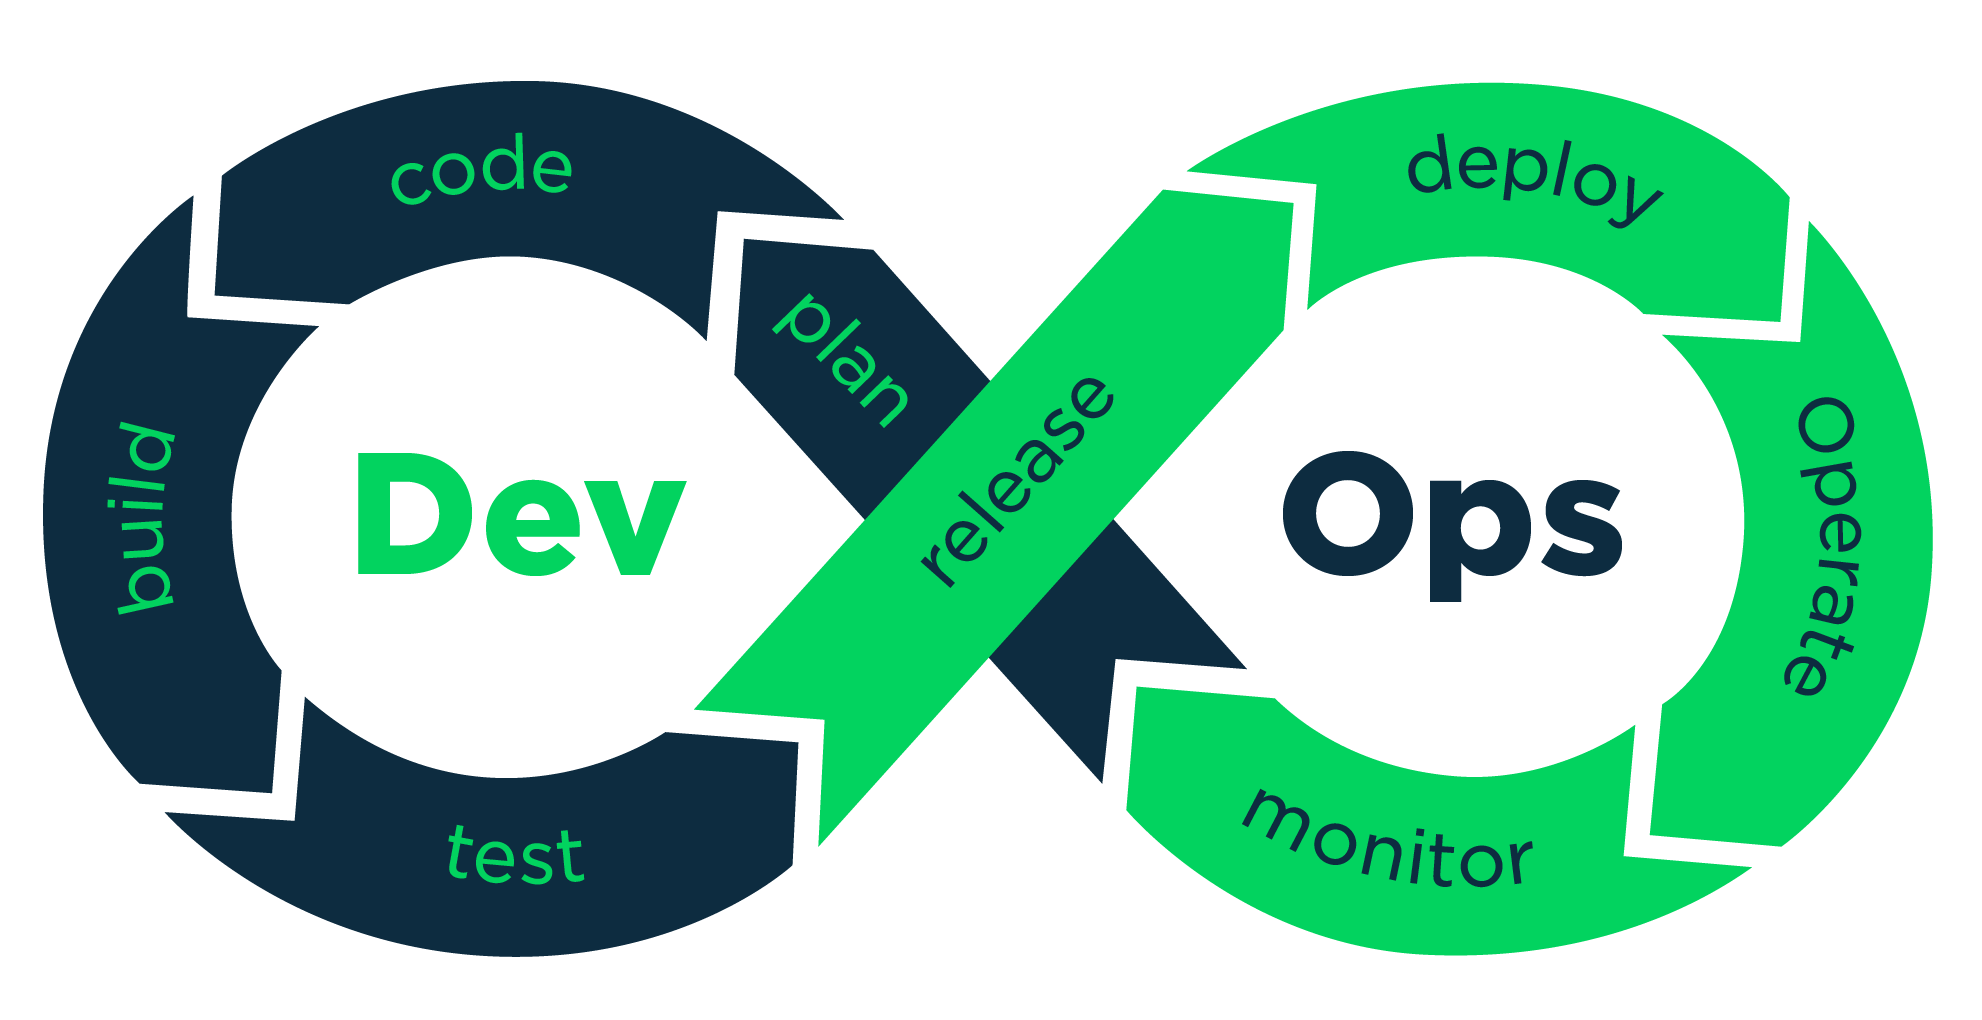 DevOps development process